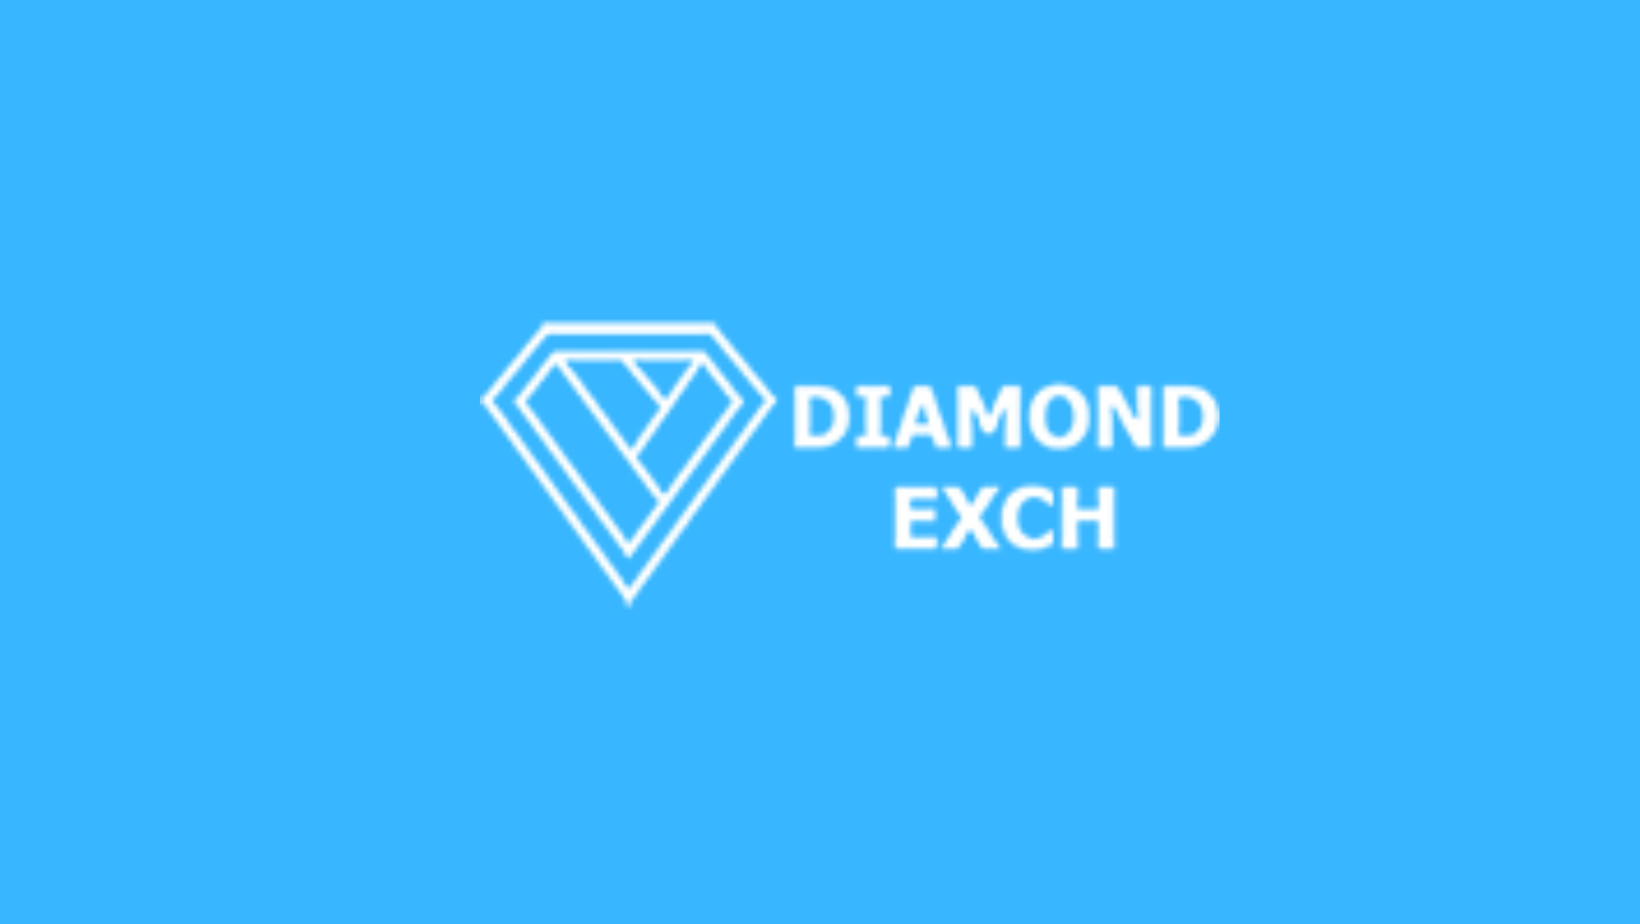 diamond exch Profile Picture